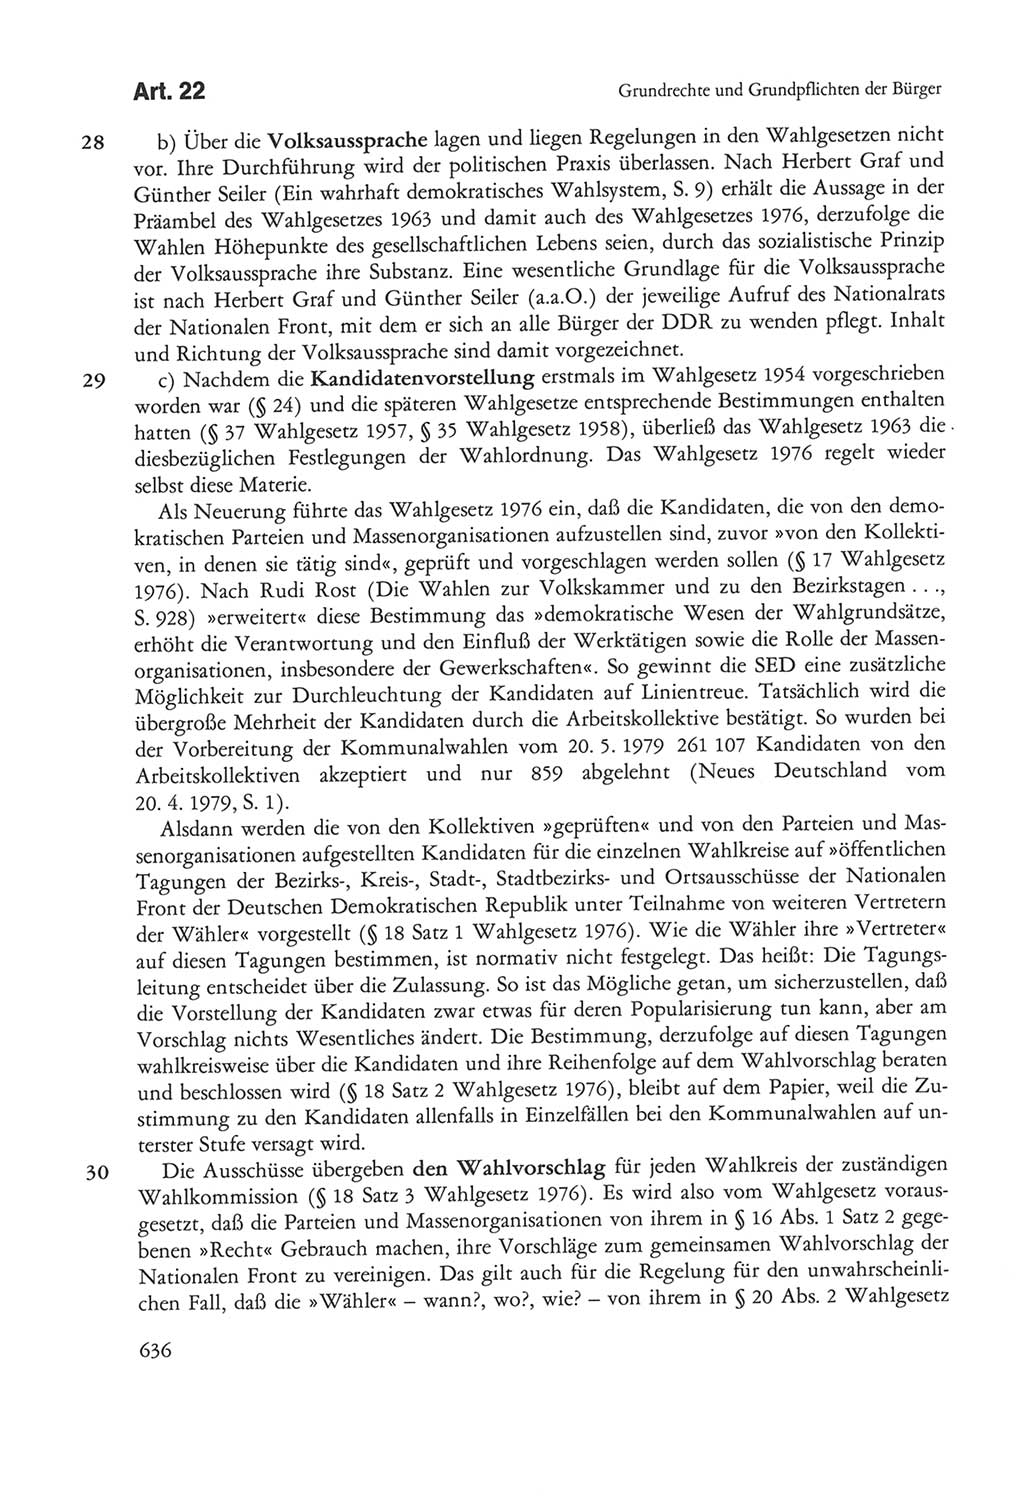 Die sozialistische Verfassung der Deutschen Demokratischen Republik (DDR), Kommentar mit einem Nachtrag 1997, Seite 636 (Soz. Verf. DDR Komm. Nachtr. 1997, S. 636)